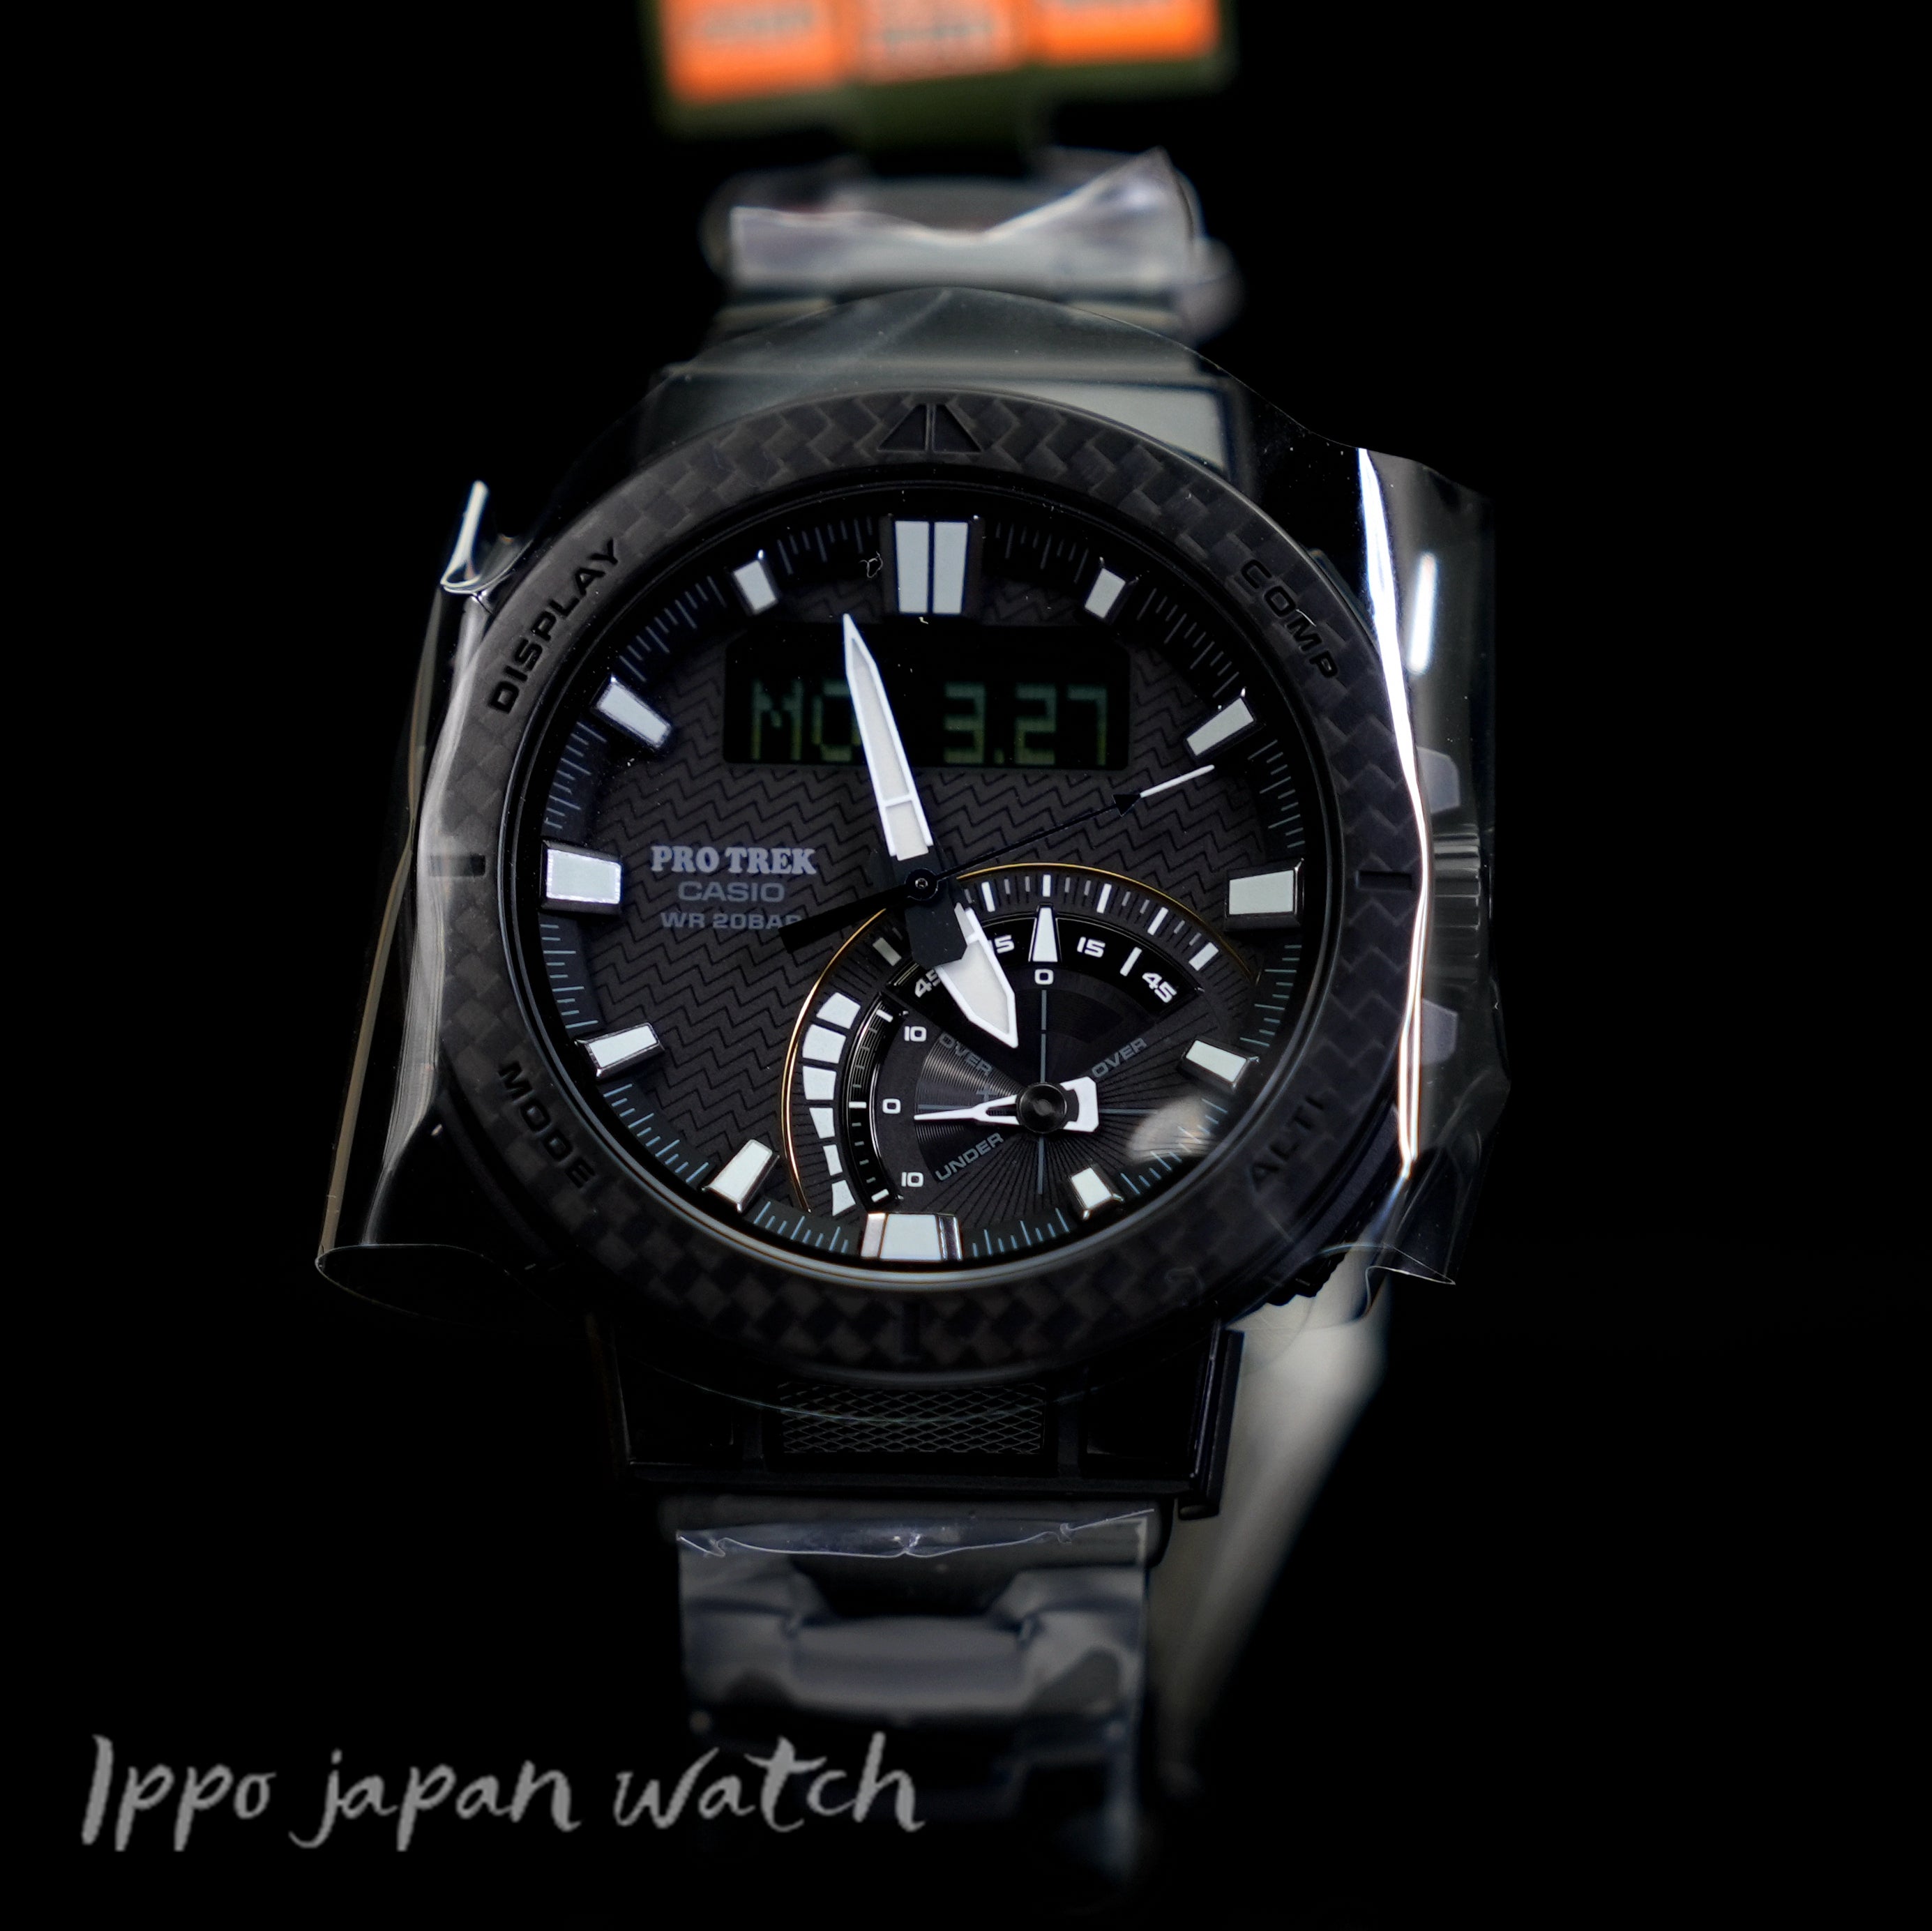 CASIO PRO TREK PRW-73XT-1JF PRW-73XT-1 solar drive 20 bar watch